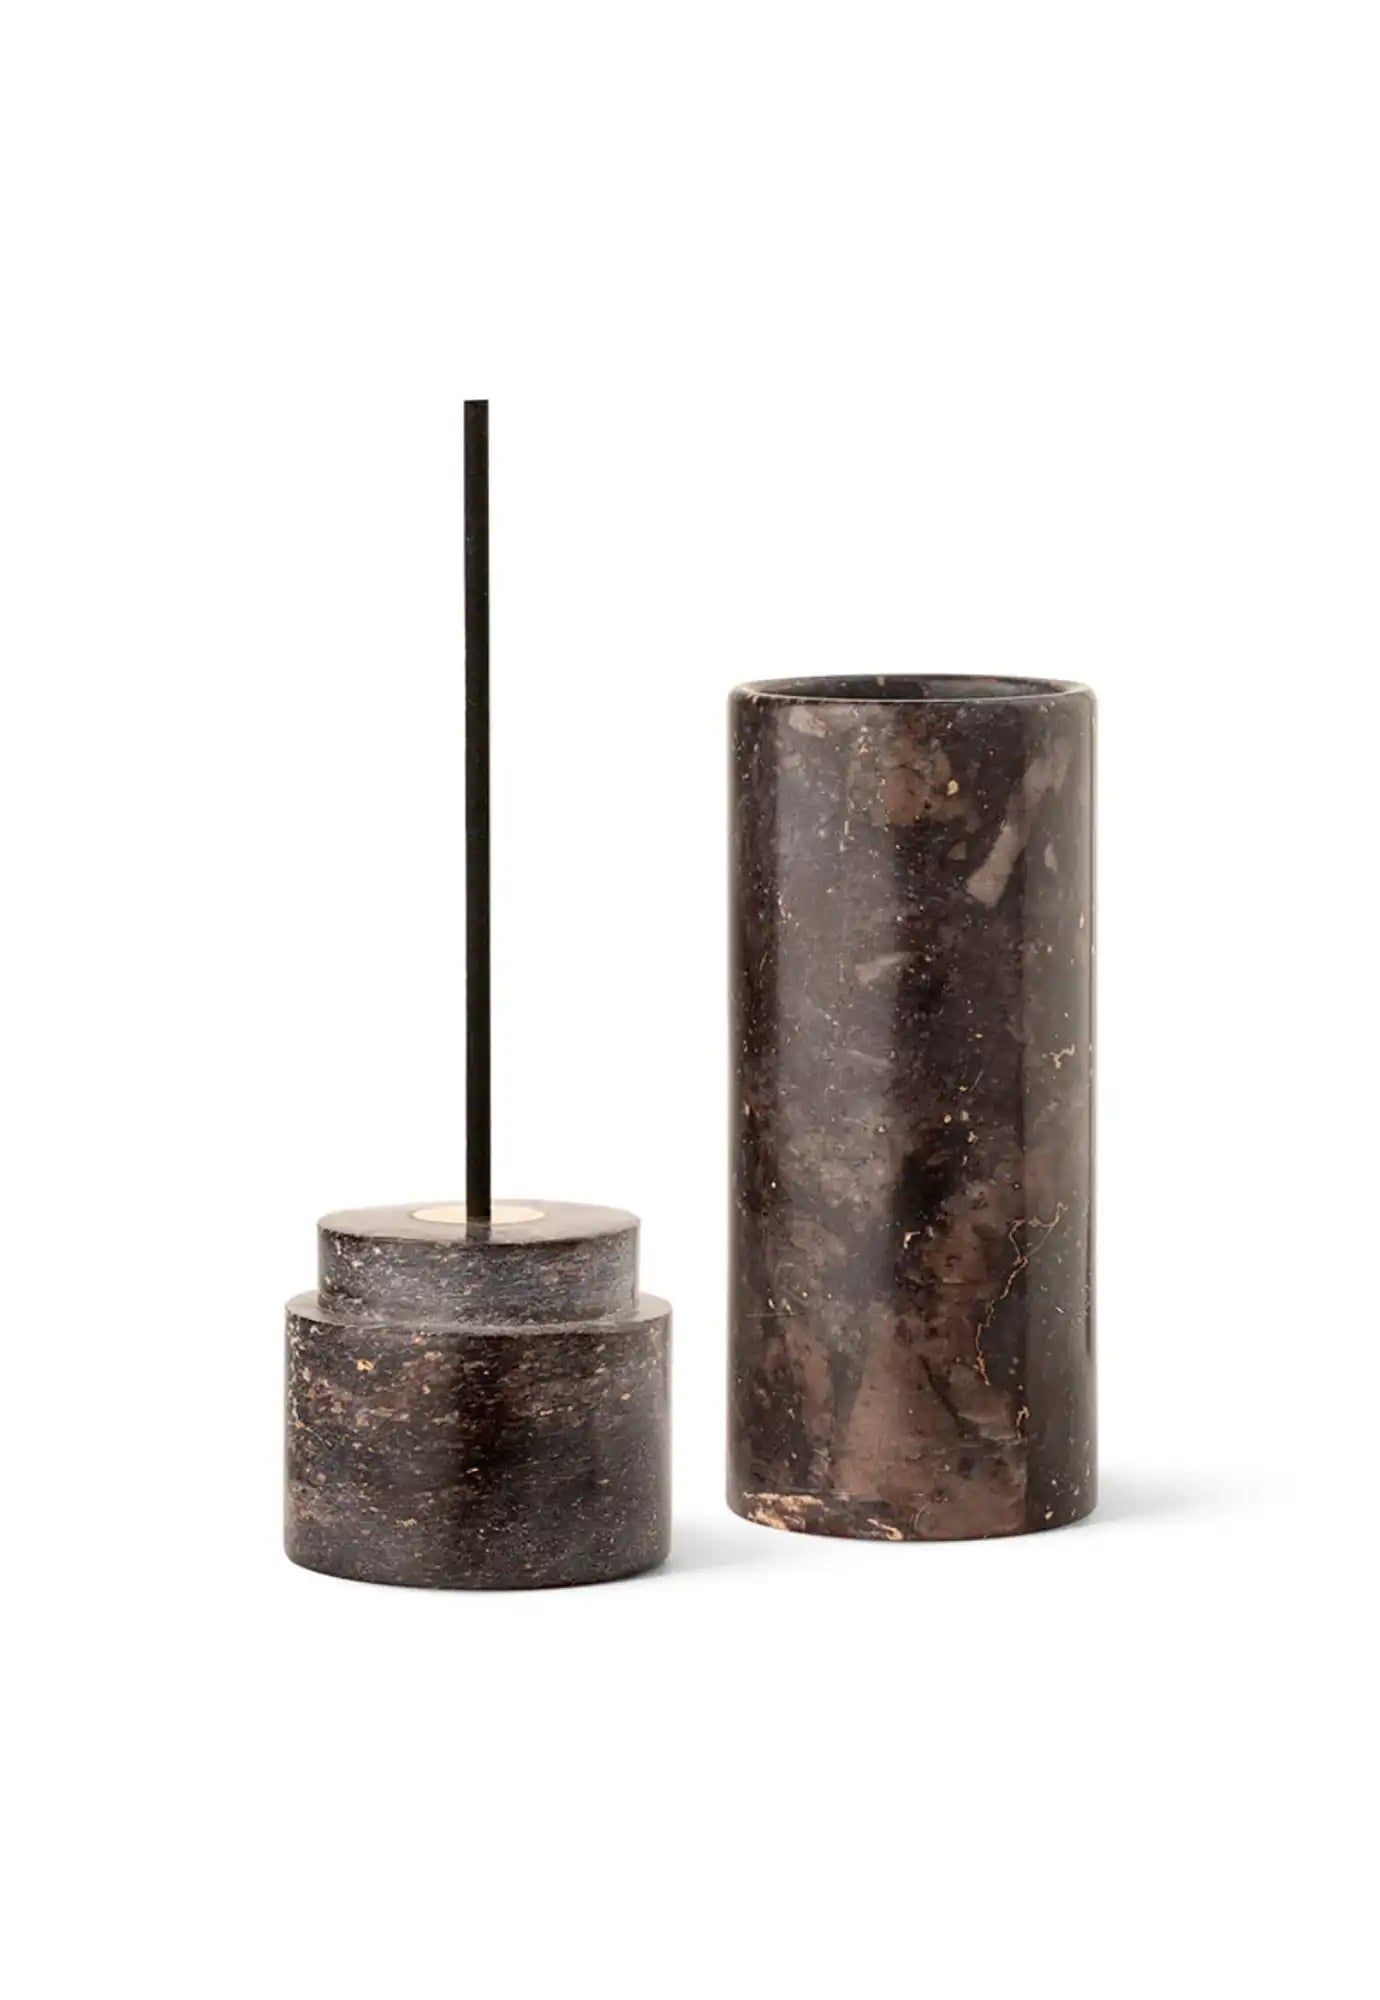 studio milligram - incense flue - natural stone